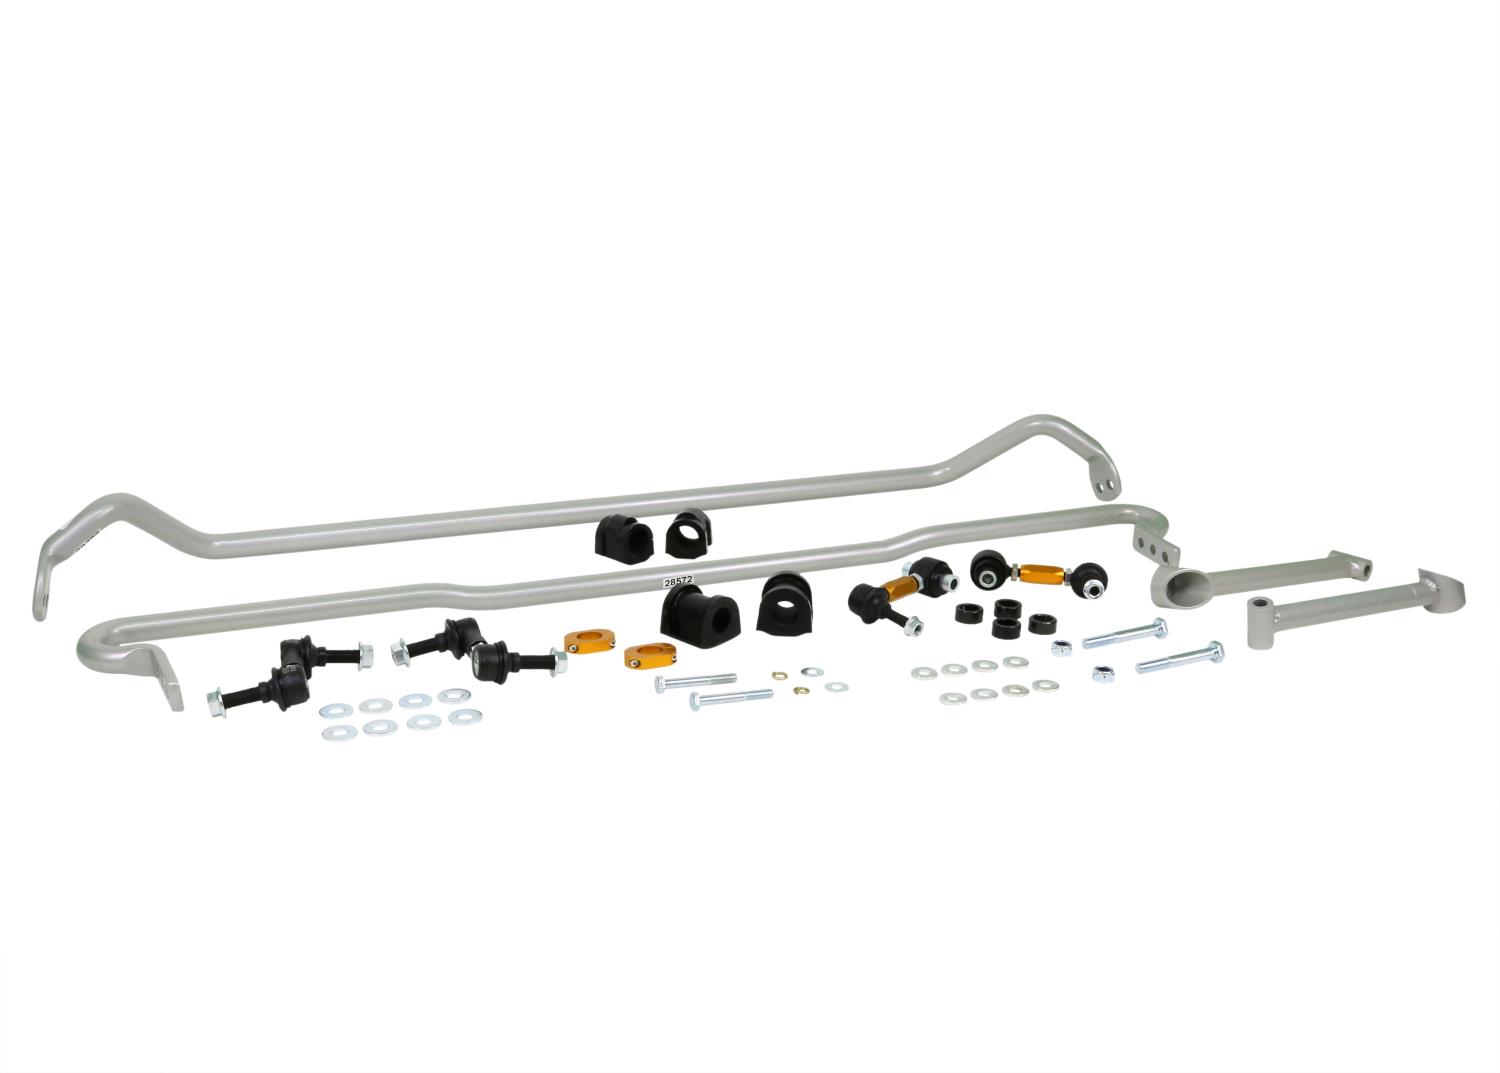 BSK019 Front And Rear Sway Bar Kit for 2015-2018 Subaru Impreza WRX STI